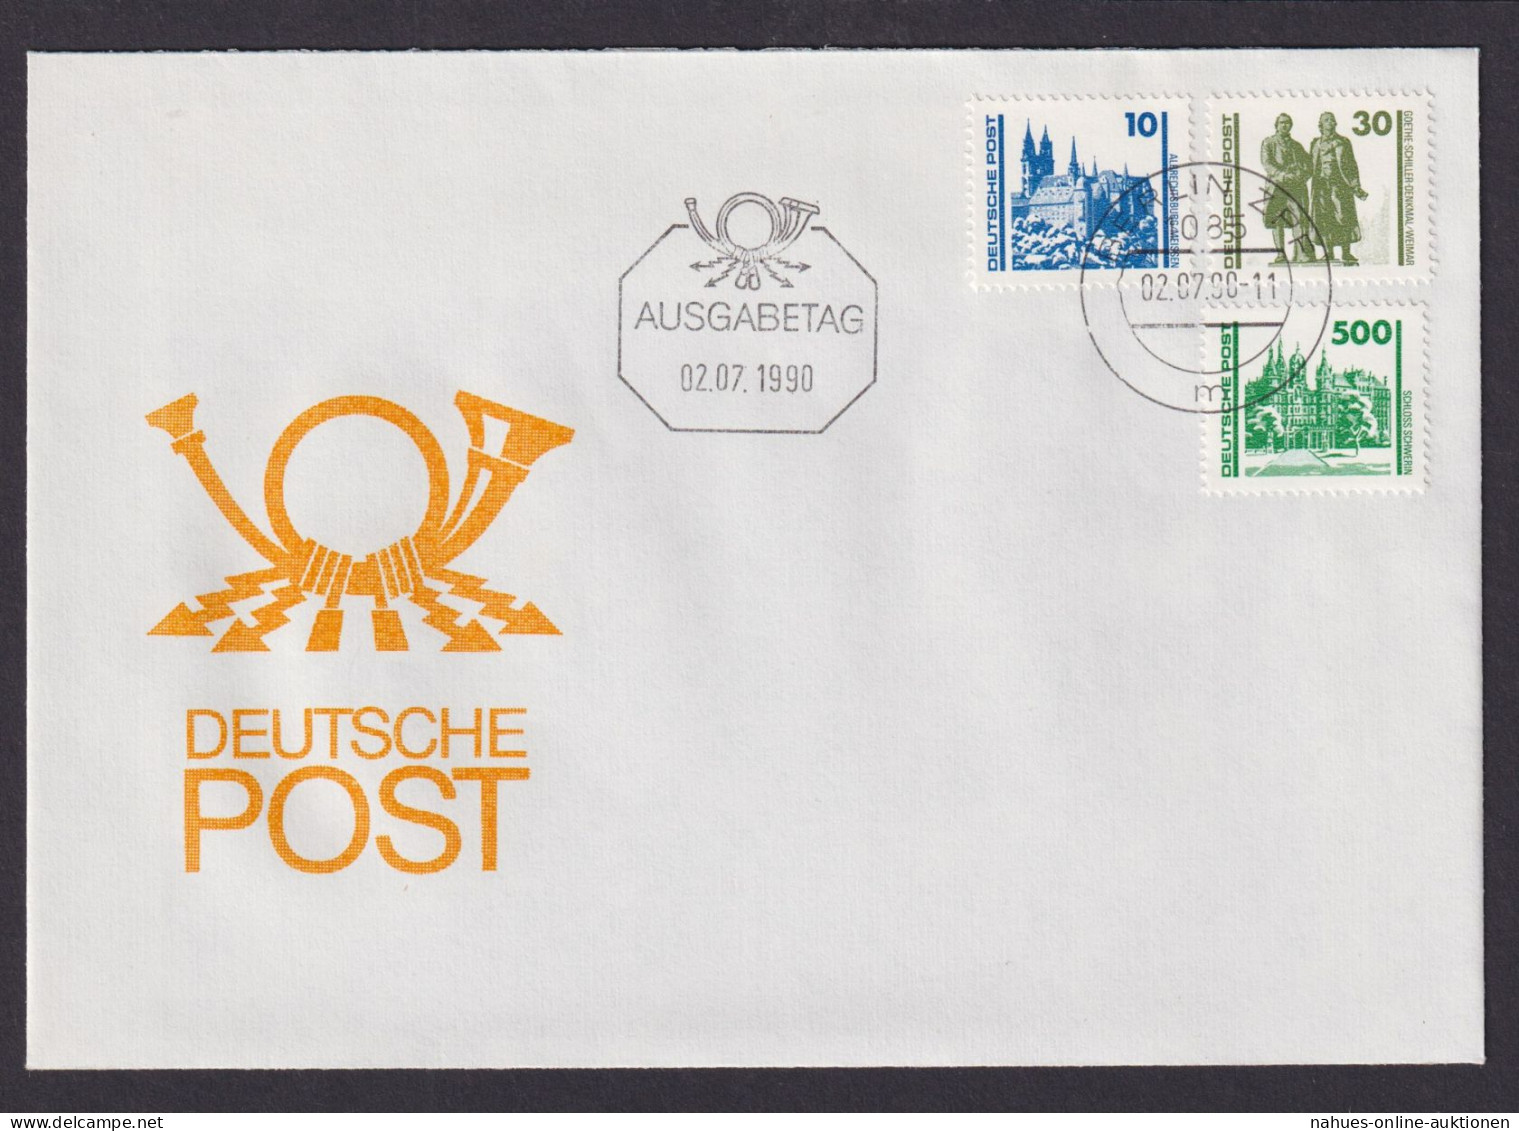 DDR 3344-3352 Bauwerke Drei Luxus FDC Ausgabetag 02.07.1990 Berlin KatWert 30,00 - Briefe U. Dokumente